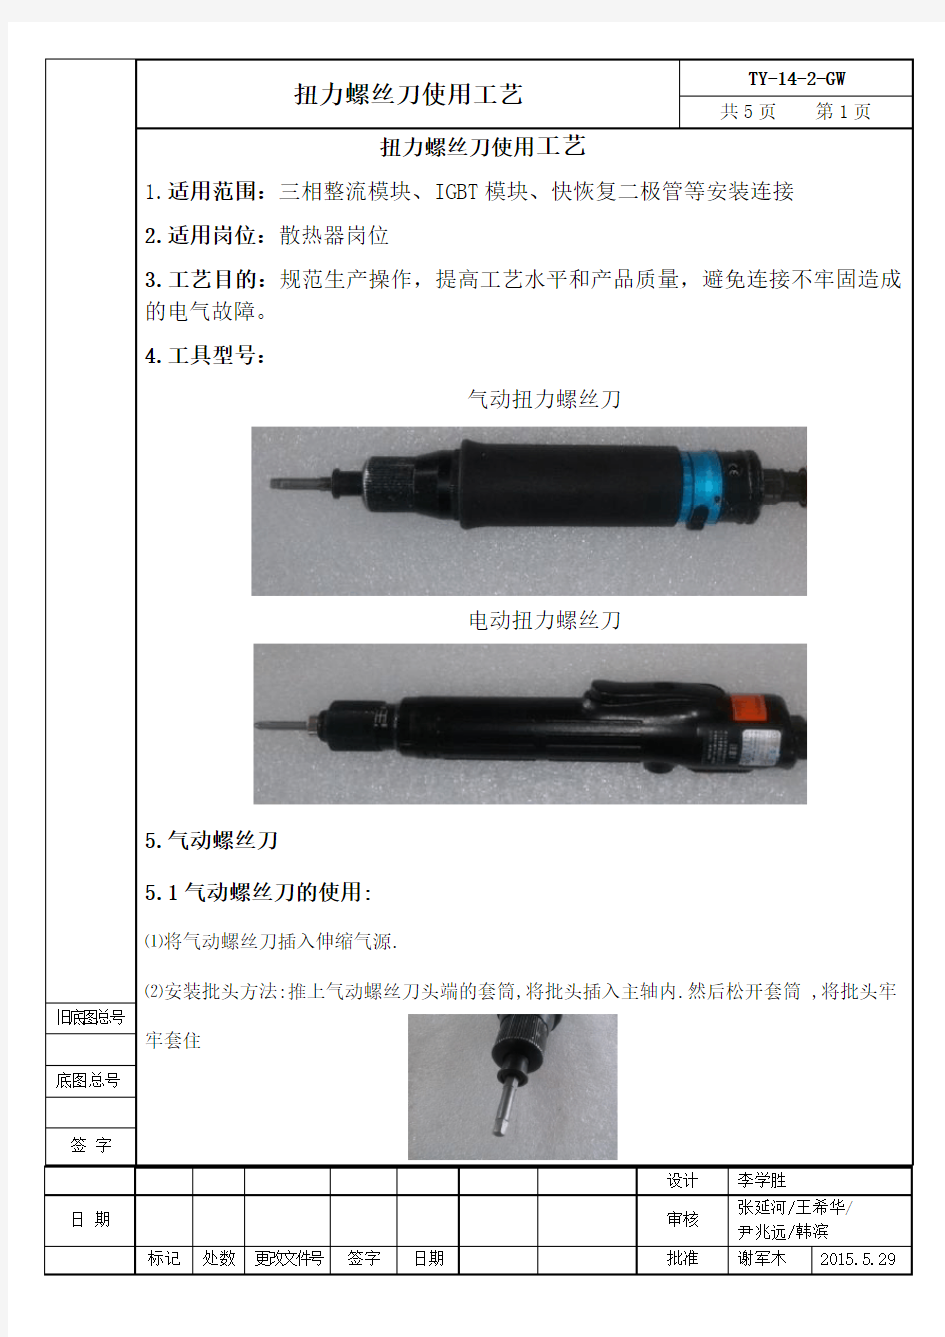 TY-14-2-GW  扭力螺丝刀使用工艺(新格式)